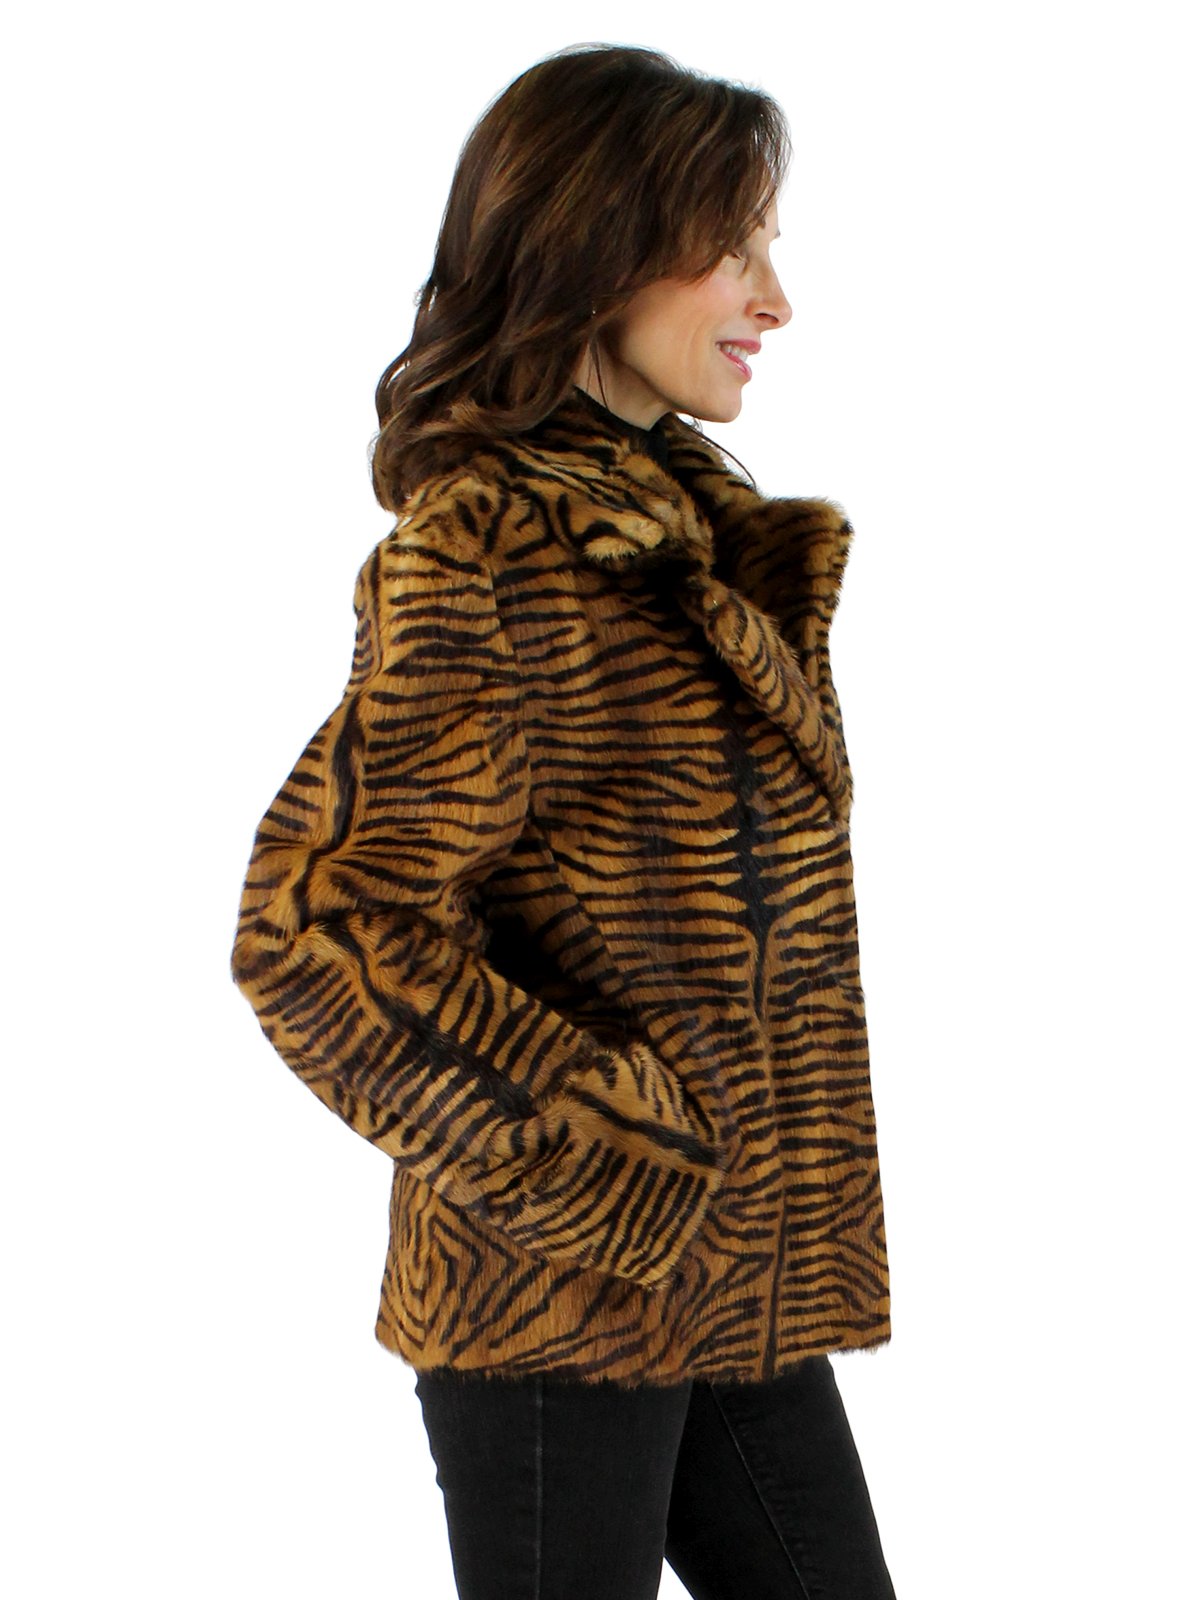 Tiger Print Calf Fur Jacket - Women's Small | Estate Furs